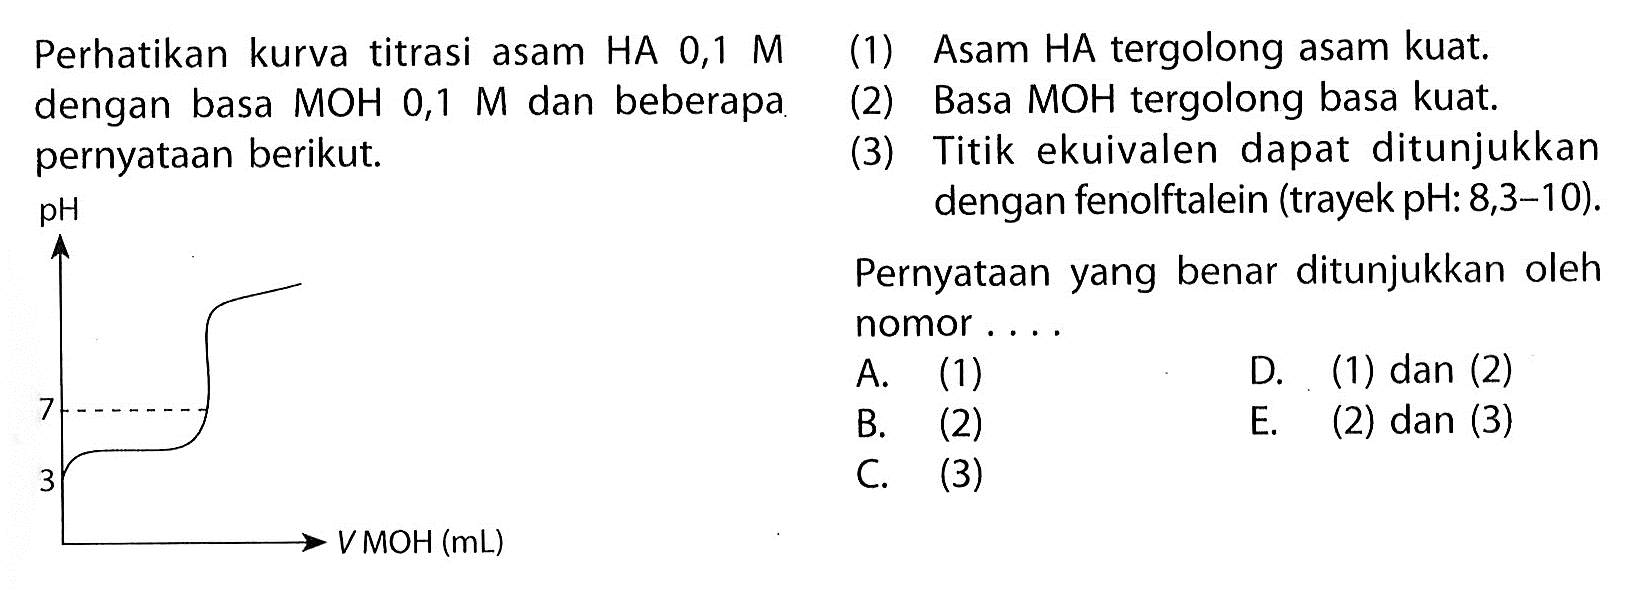 Perhatikan kurva titrasi asam HA 0,1 M dengan basa  MOH 0,1 M dan beberapa pernyataan berikut (1) Asam HA tergolong asam kuat. (2) Basa MOH tergolong basa kuat. (3) Titik ekuivalen dapat ditunjukkan dengan fenolftalein (trayek pH: 8,3-10). Pernyataan yang benar ditunjukkan oleh nomor ...      